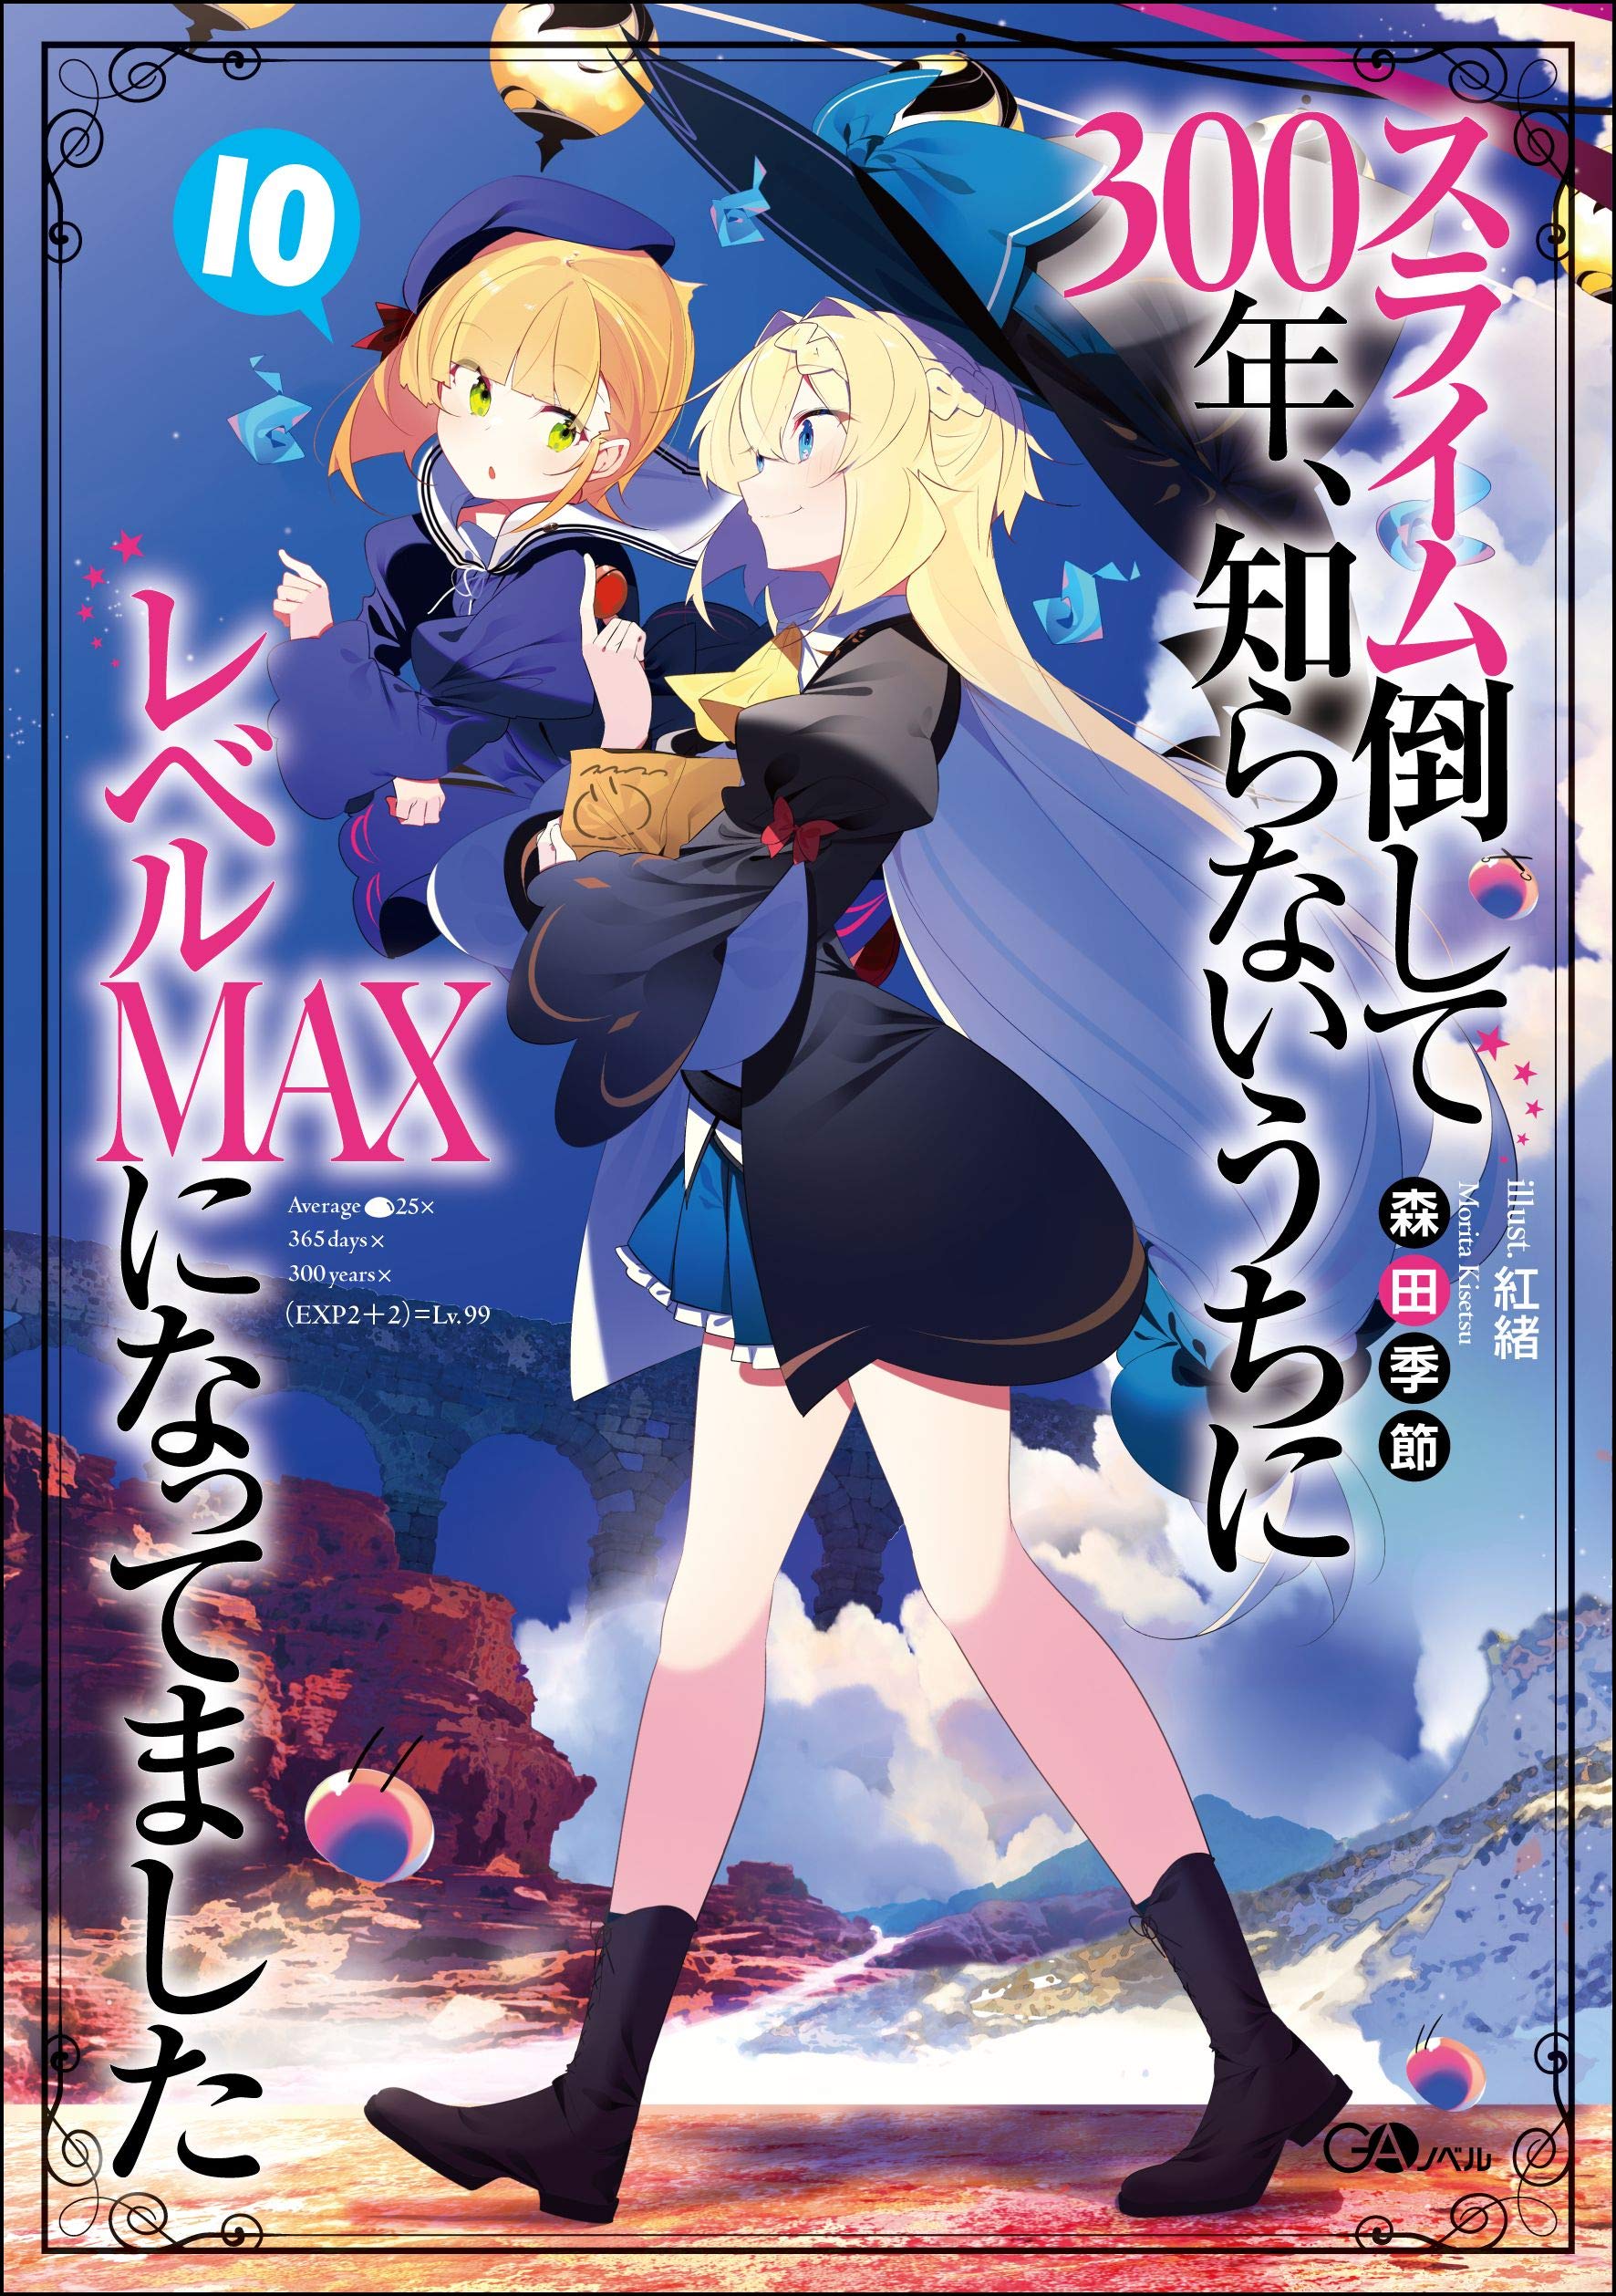 Light Novel 10. Slime Taoshite 300 Nen